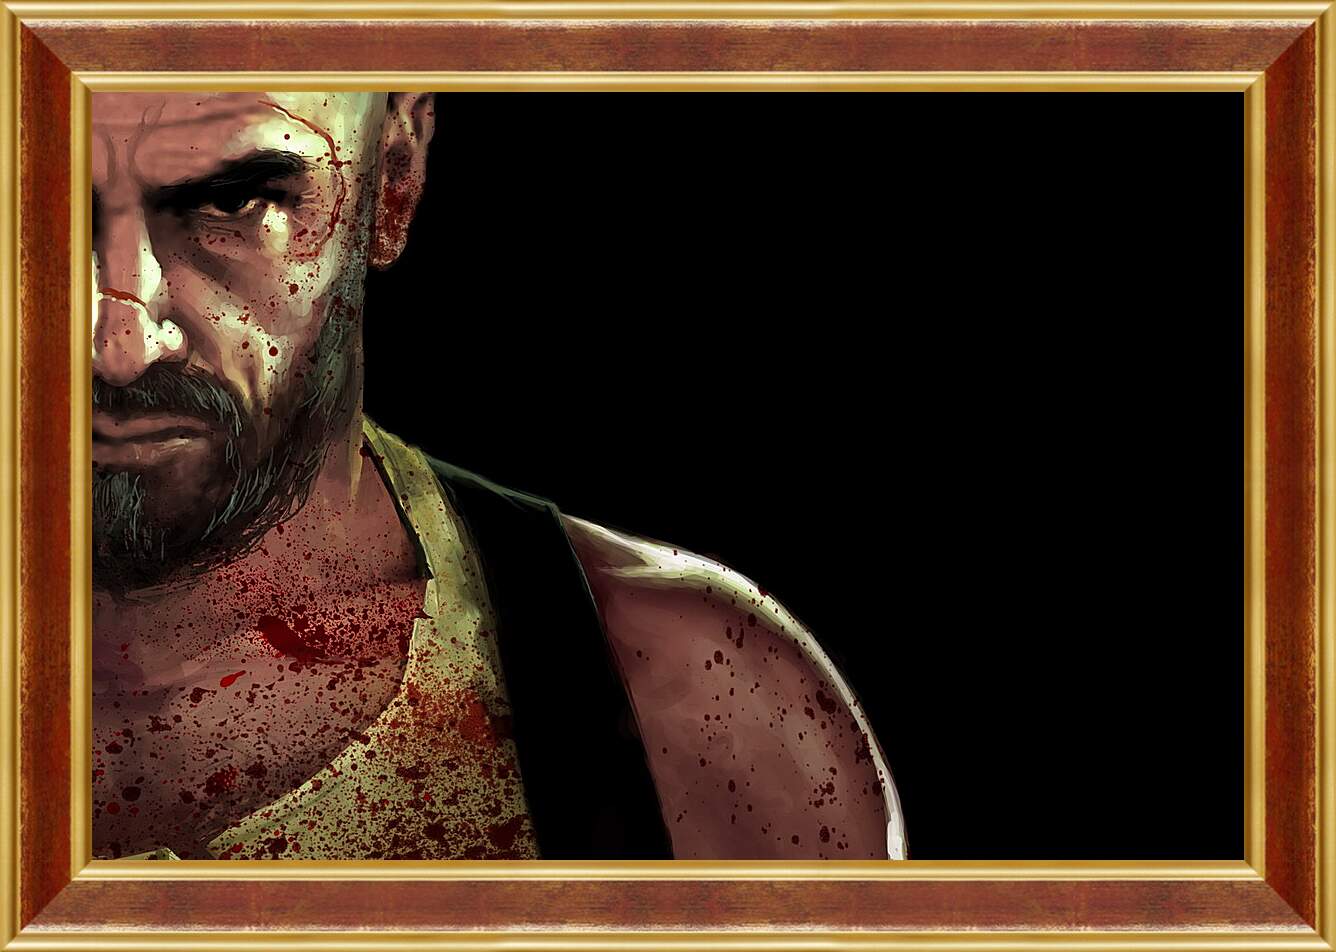 Картина в раме - Max Payne
